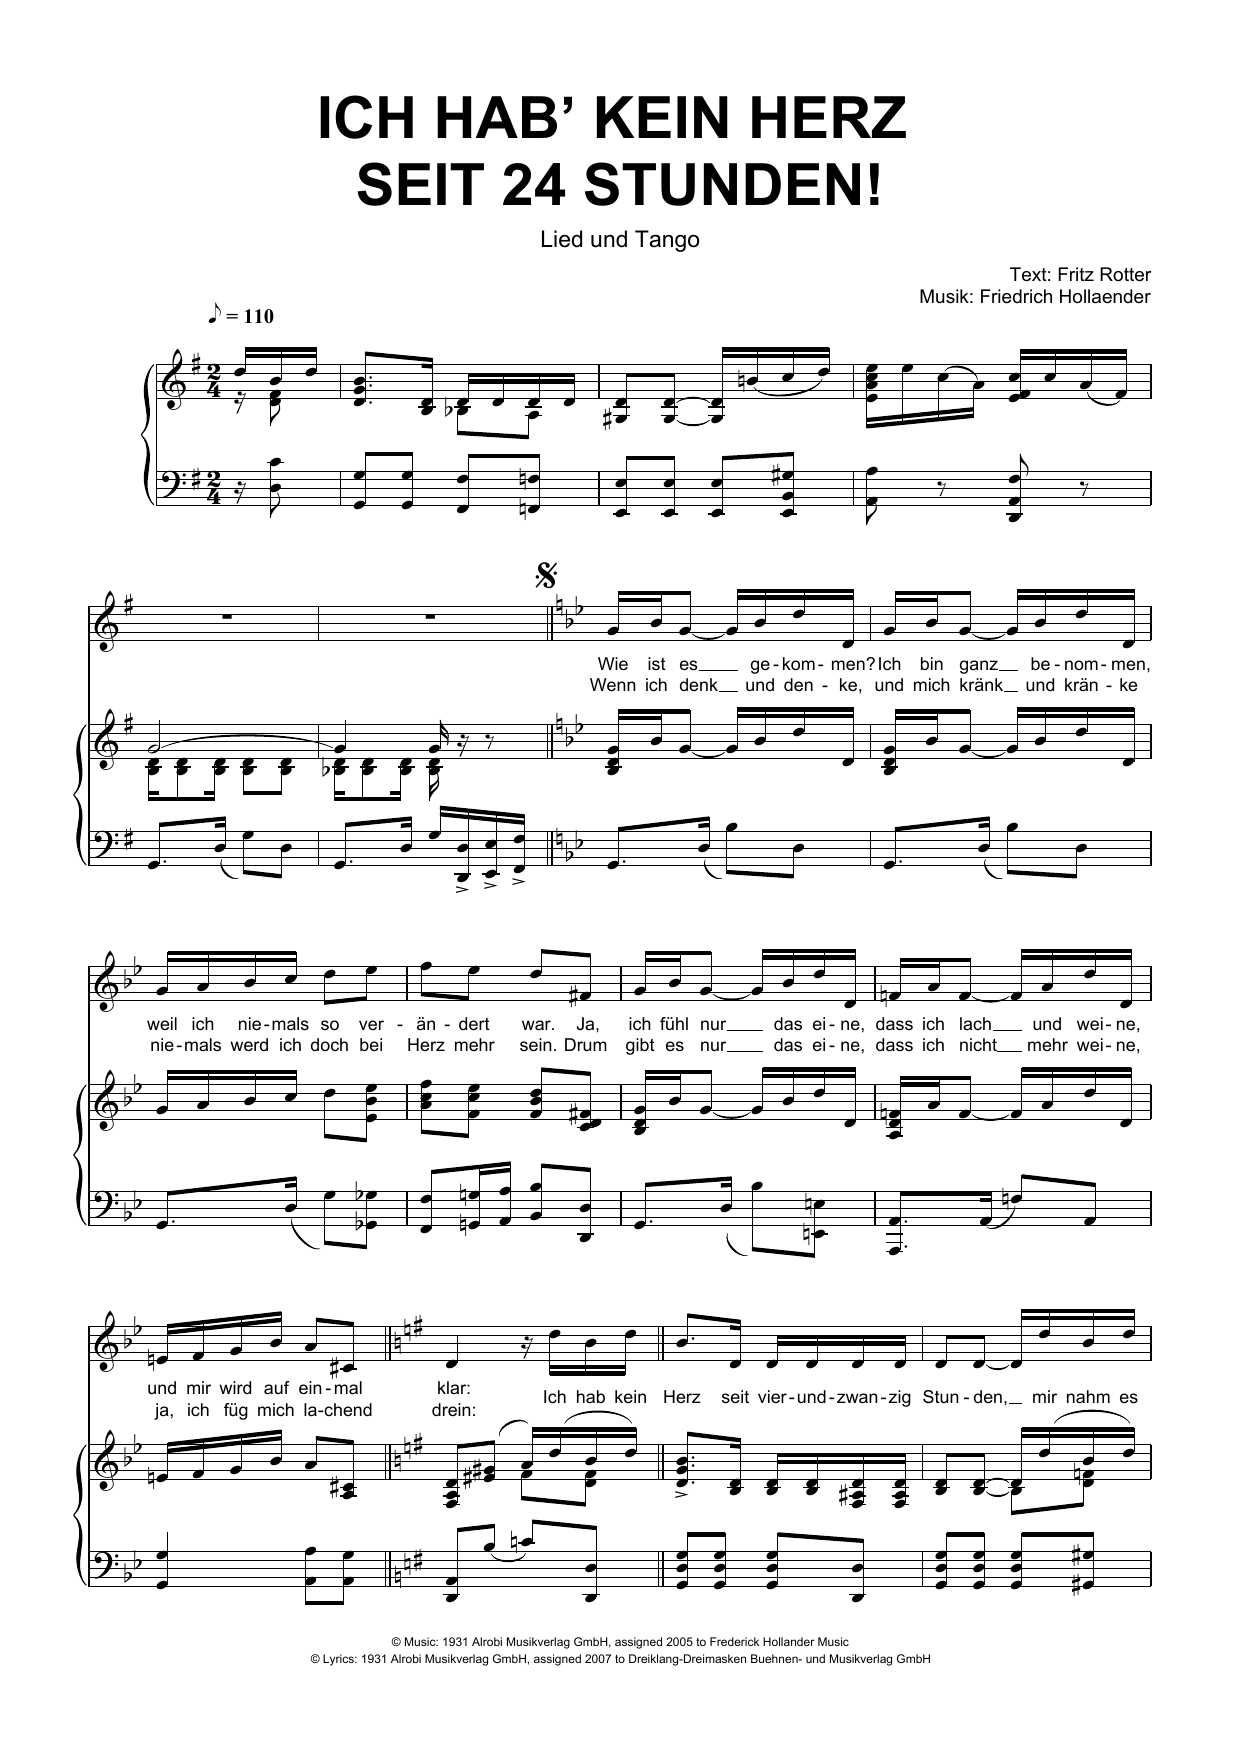 Friedrich Hollaender Ich Hab' Kein Herz Seit 24 Stunden! Sheet Music Notes & Chords for Piano & Vocal - Download or Print PDF